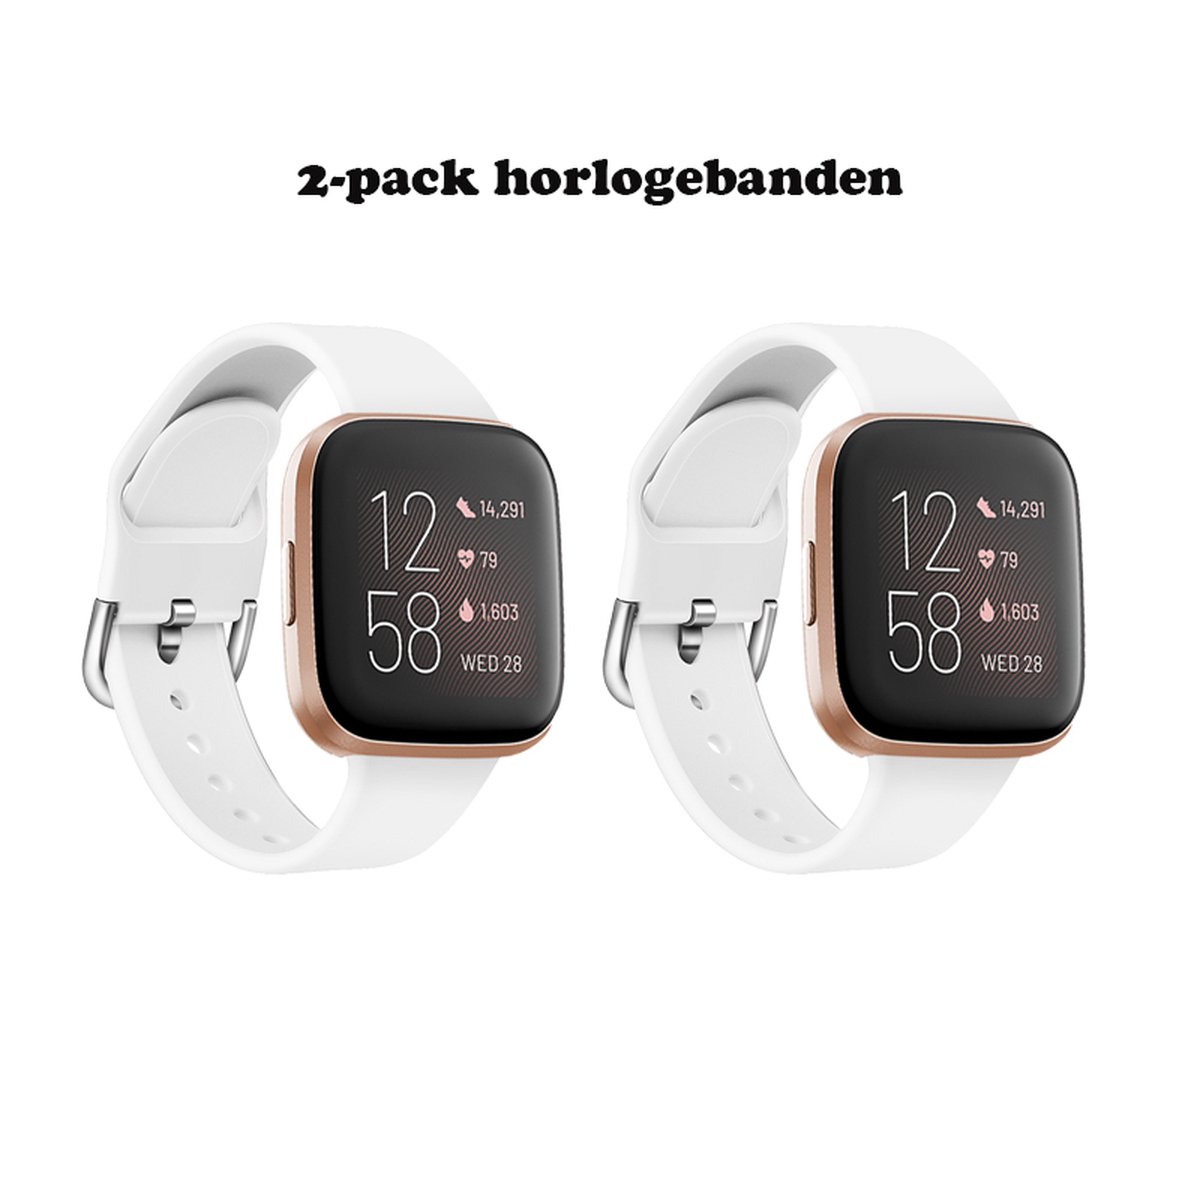 Andyou-2-pack horlogebanden - voor Fitbit Versa 2 dames herenhorloge - zachte siliconen sportvervangingsbanden - wit